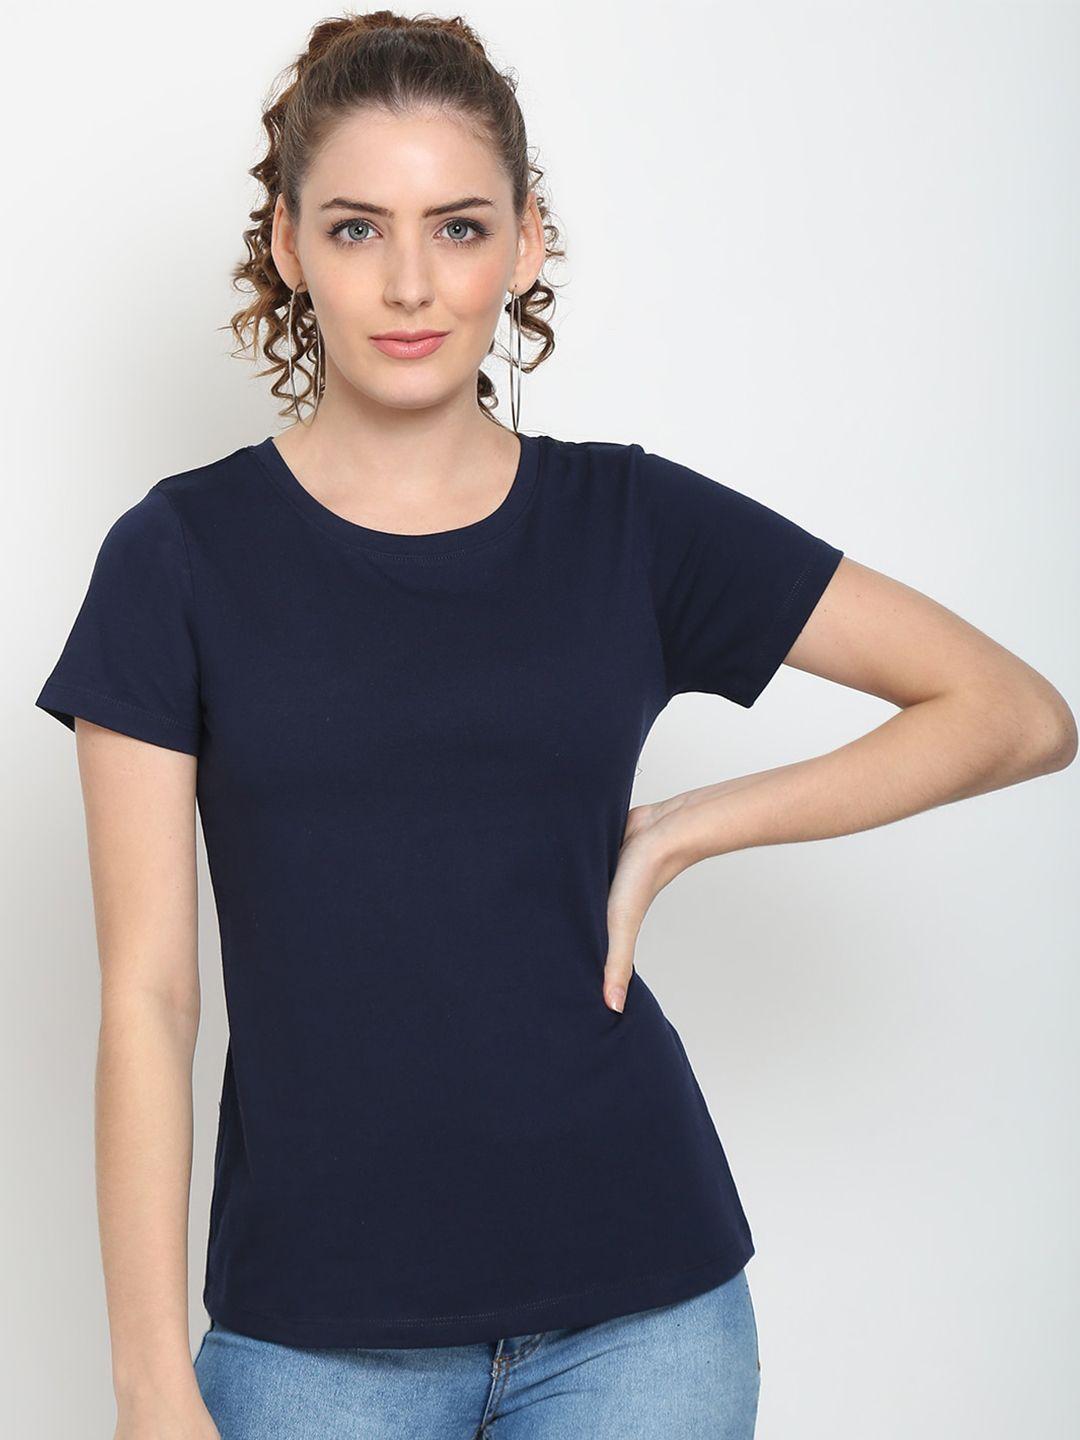 unaone women navy blue plus size slim fit pure cotton t-shirt